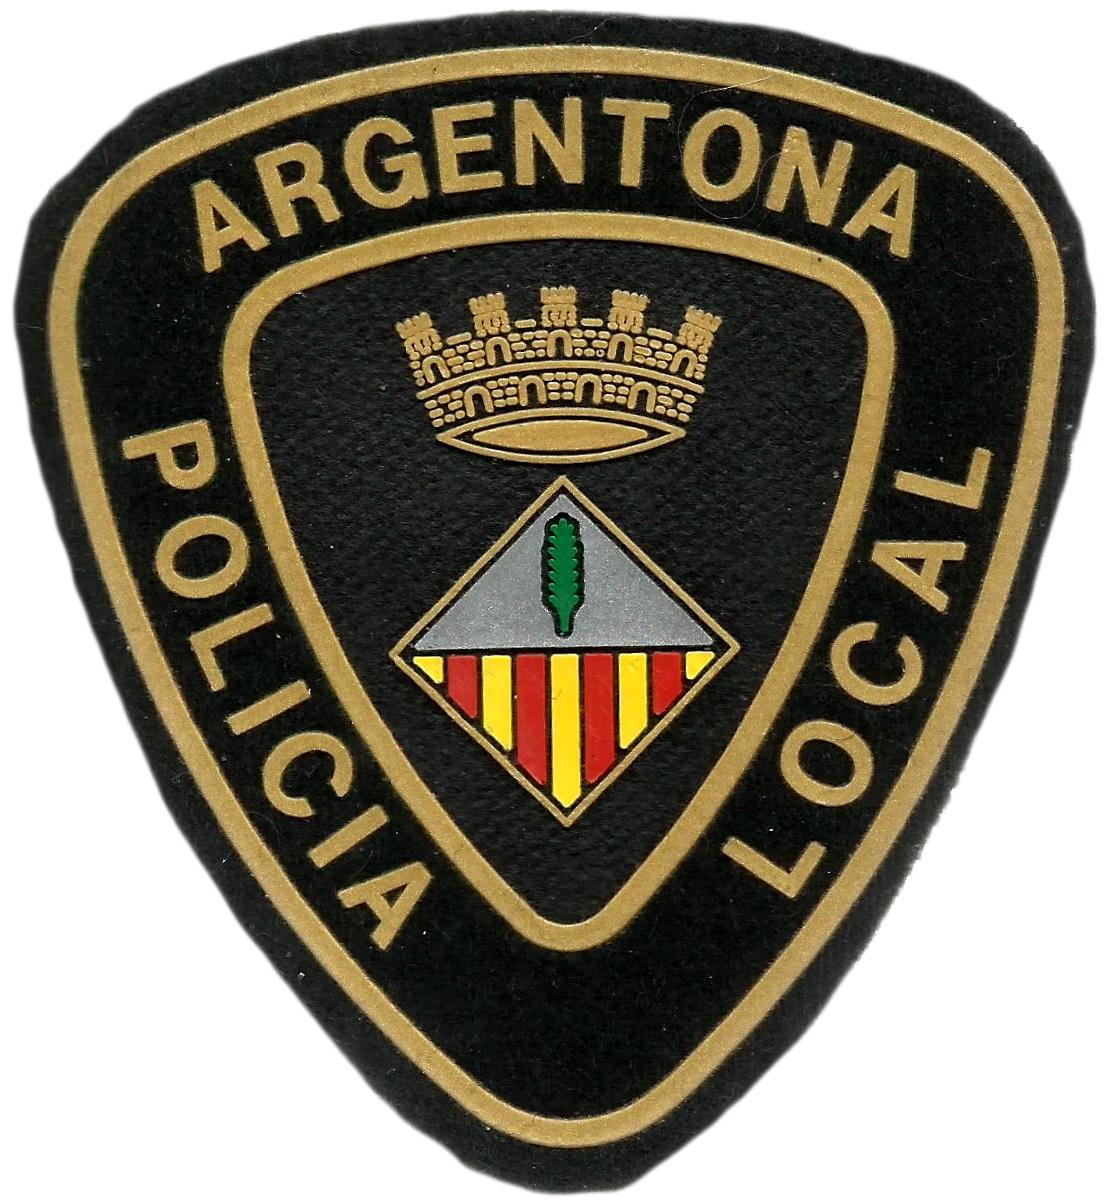 Policía local Argentona parche insignia emblema distintivo